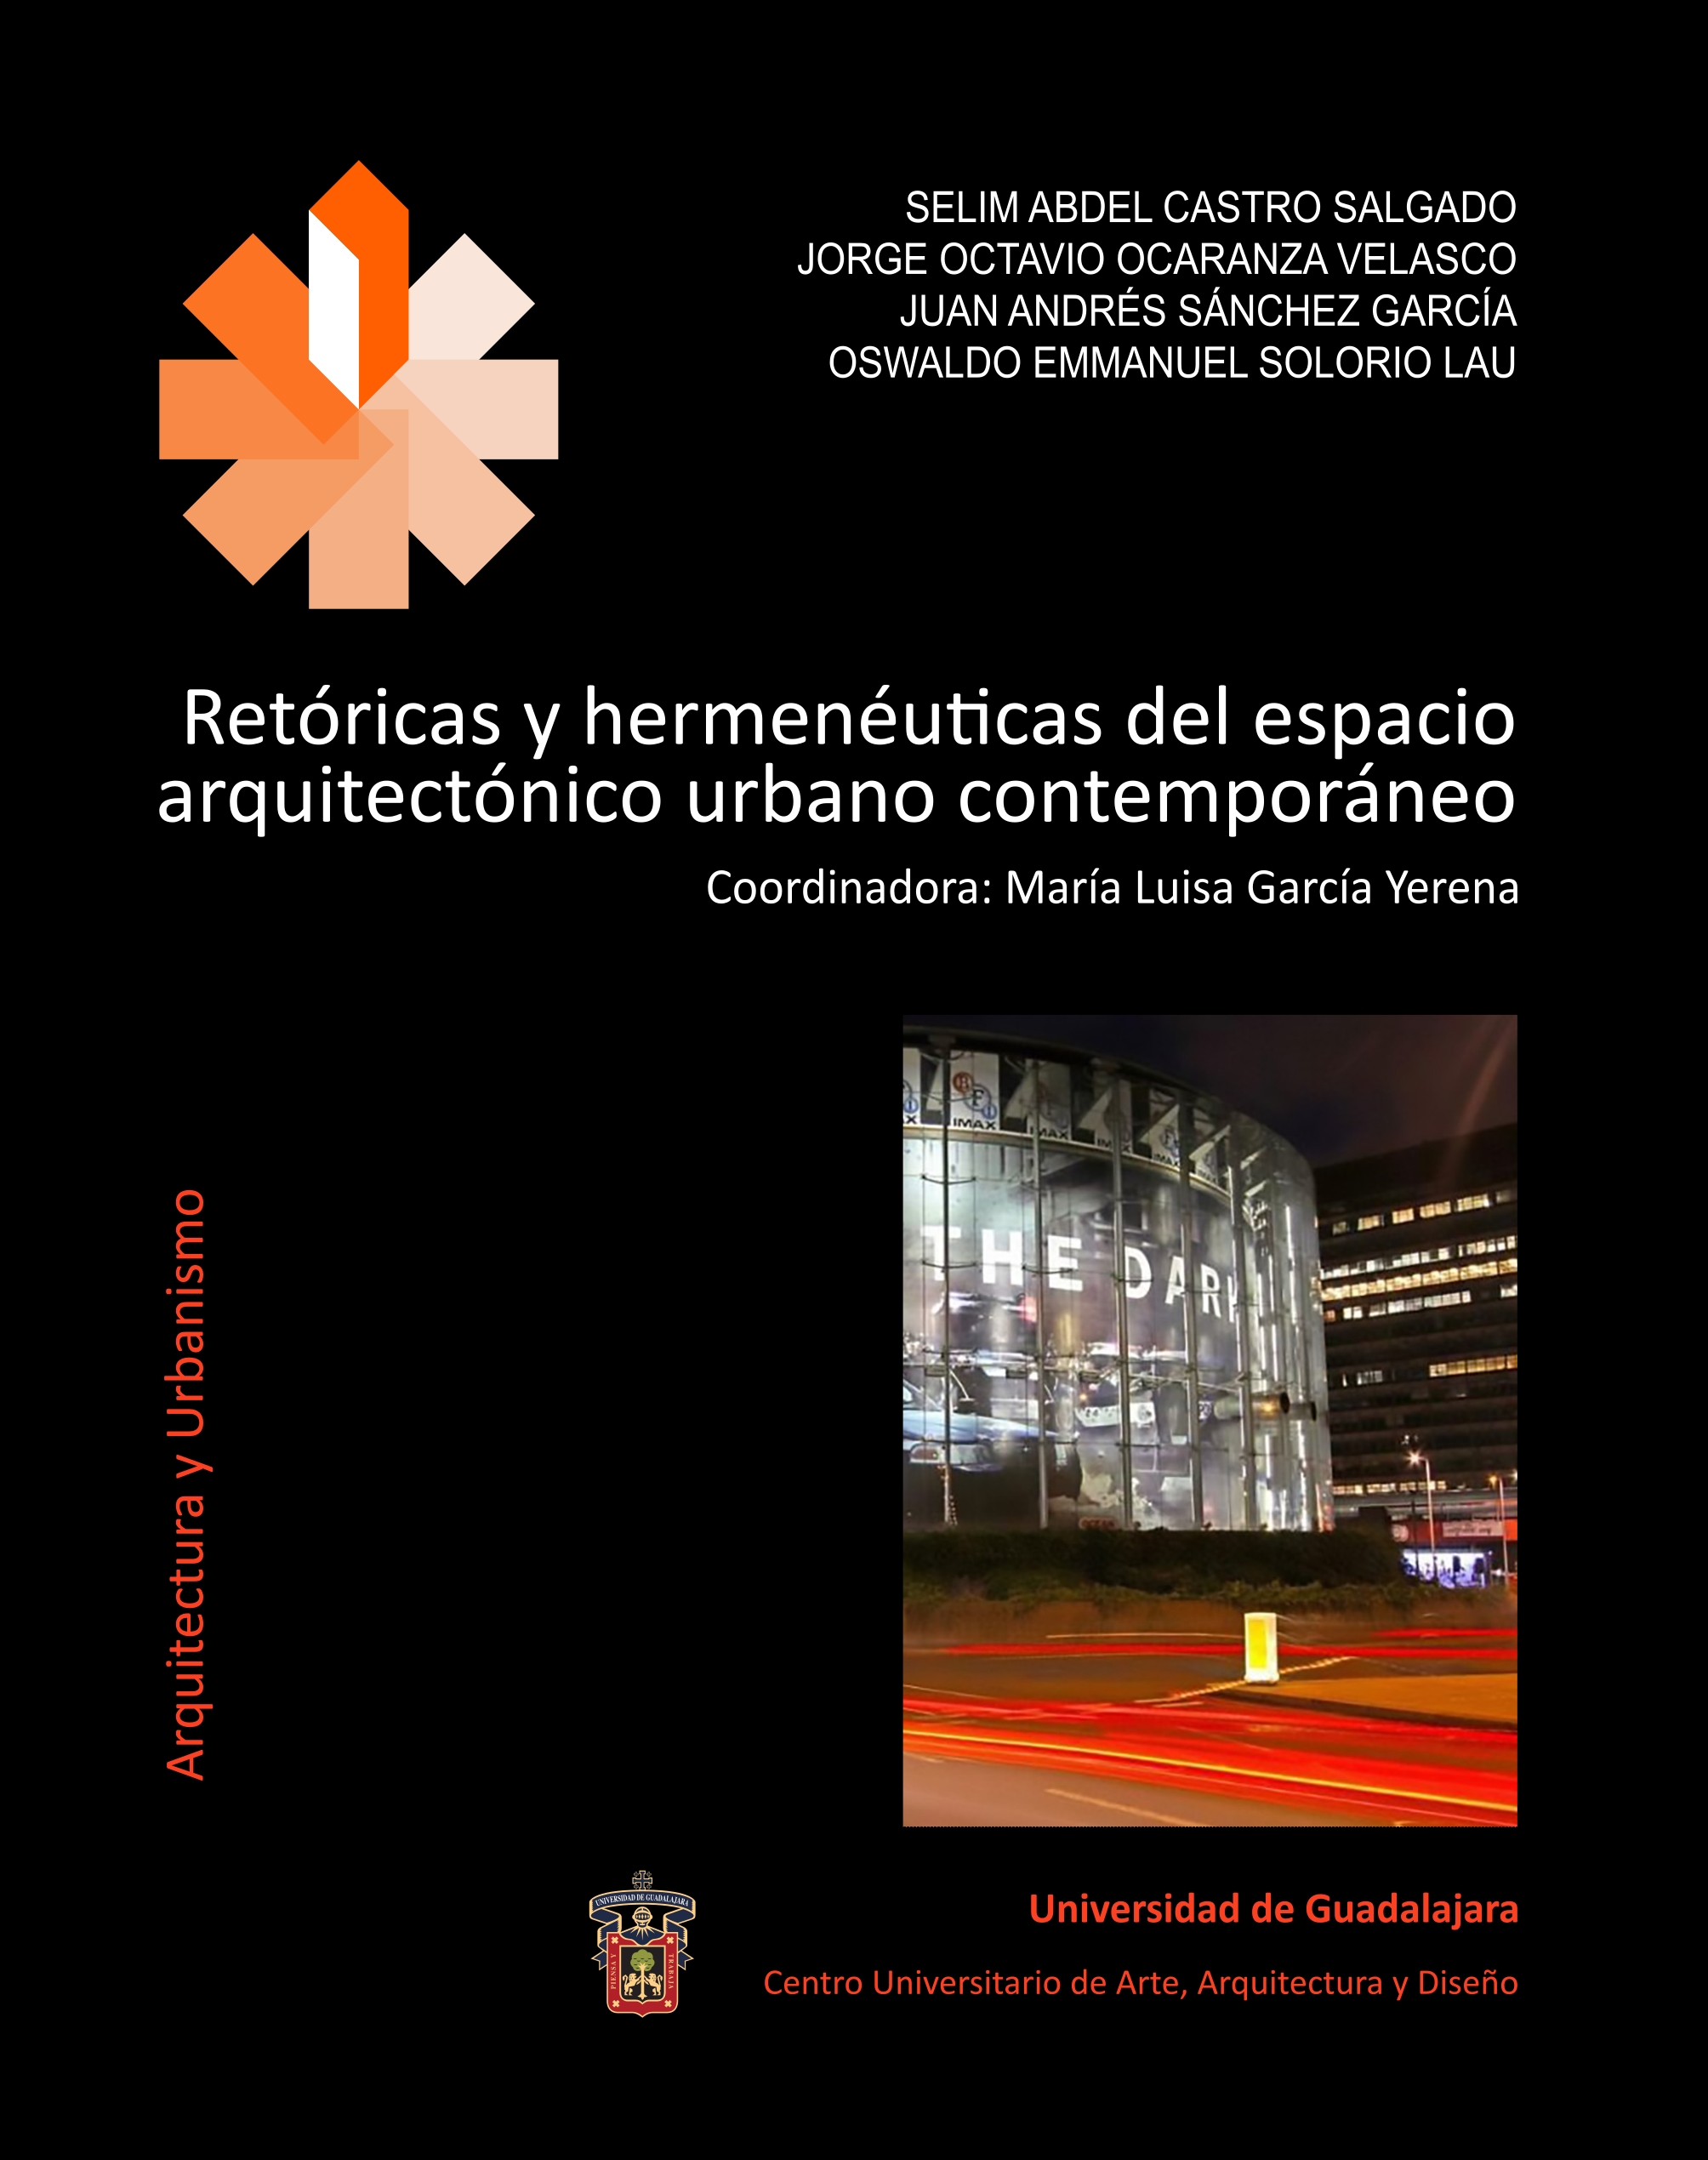 https://mpegpau.cuaad.udg.mx/images/publicaciones/Portada_Retóricas_y_hermenéuticas_del_espacio_arquitectónico_urbano_contemporáneo.jpg